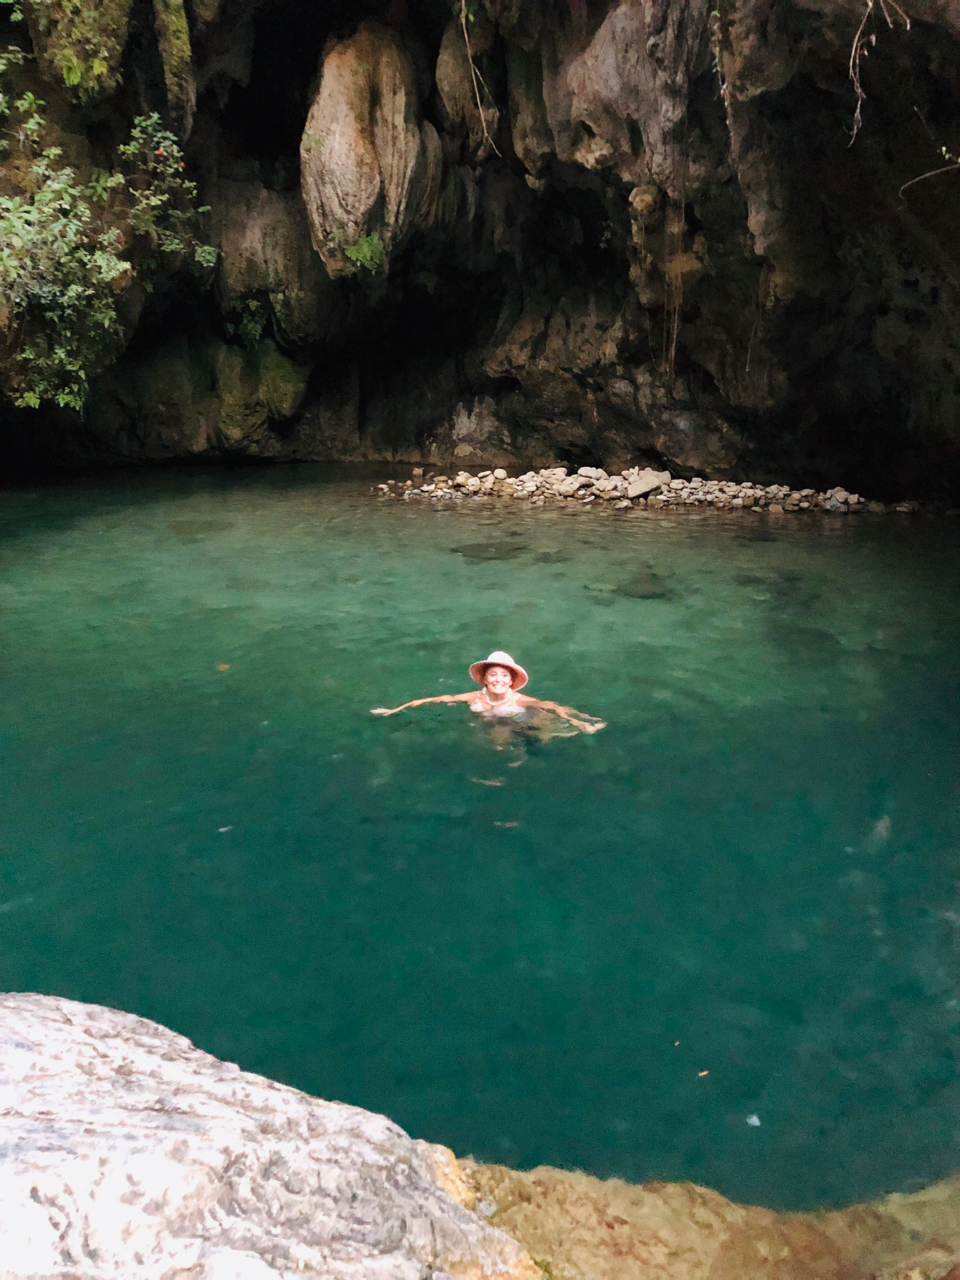 Cuba 2018-yn-swimming cave.jpg